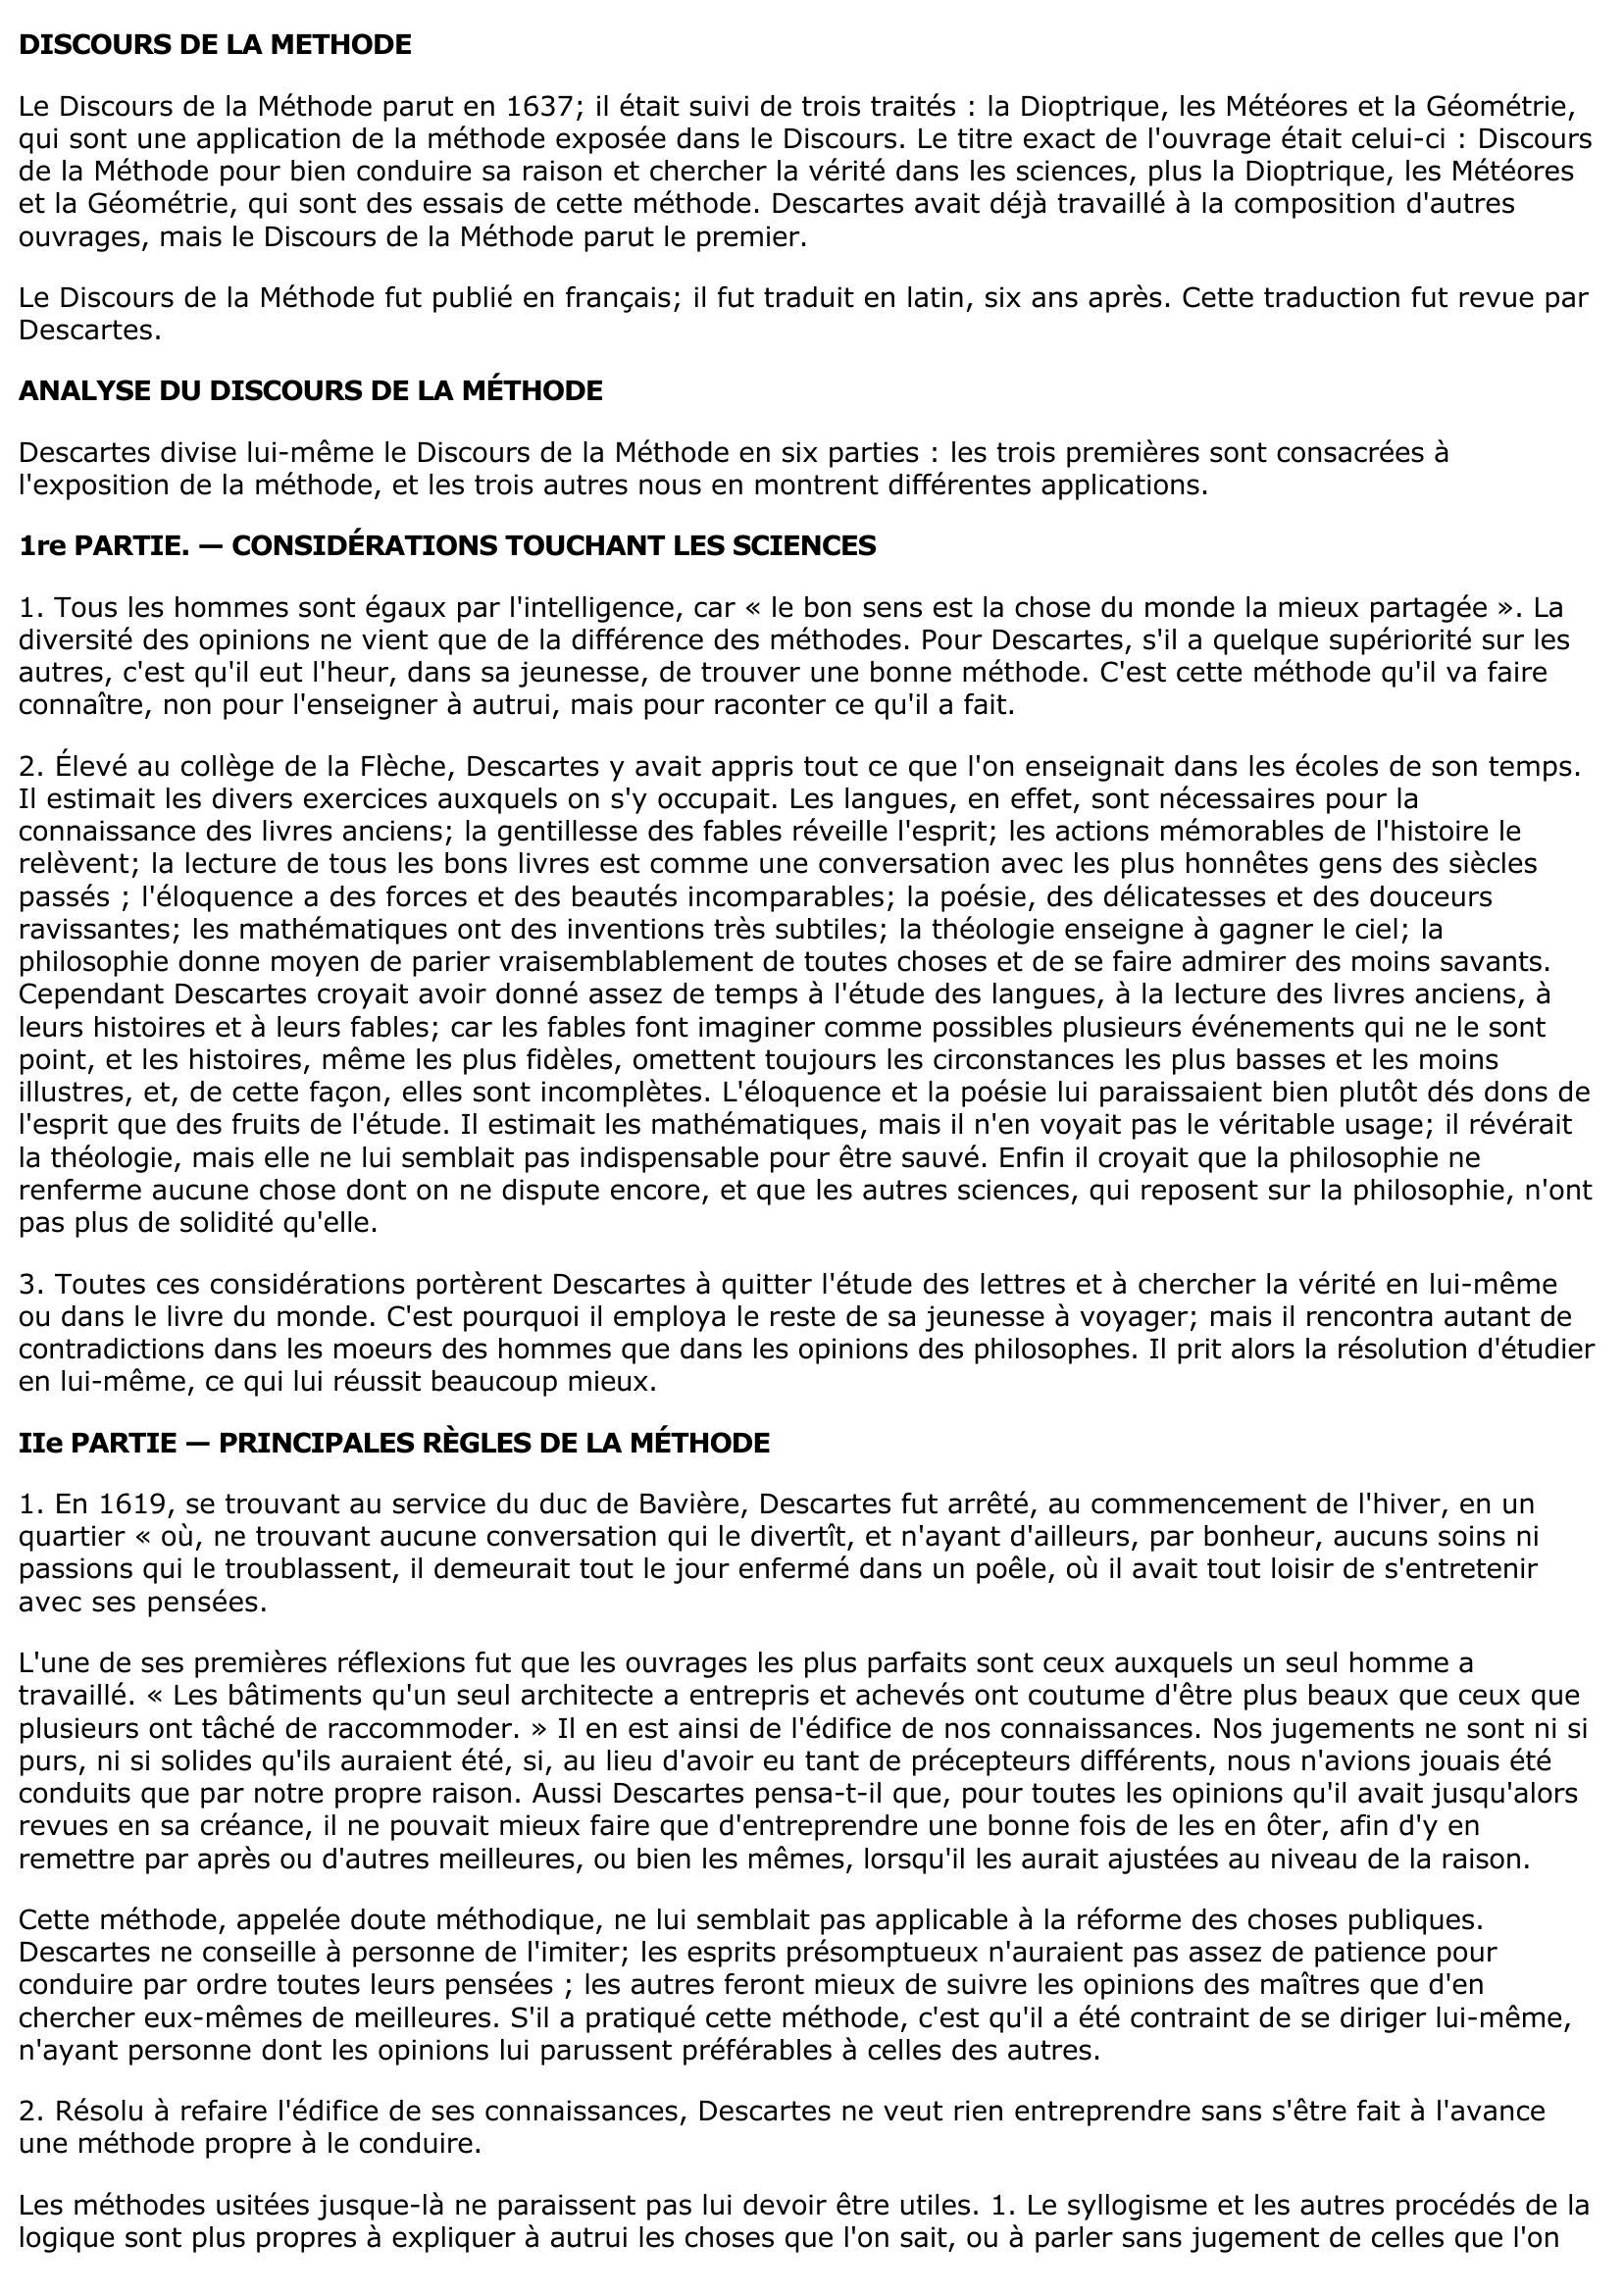 Prévisualisation du document ANALYSE DU "DISCOURS DE LA METHODE" DE DESCARTES